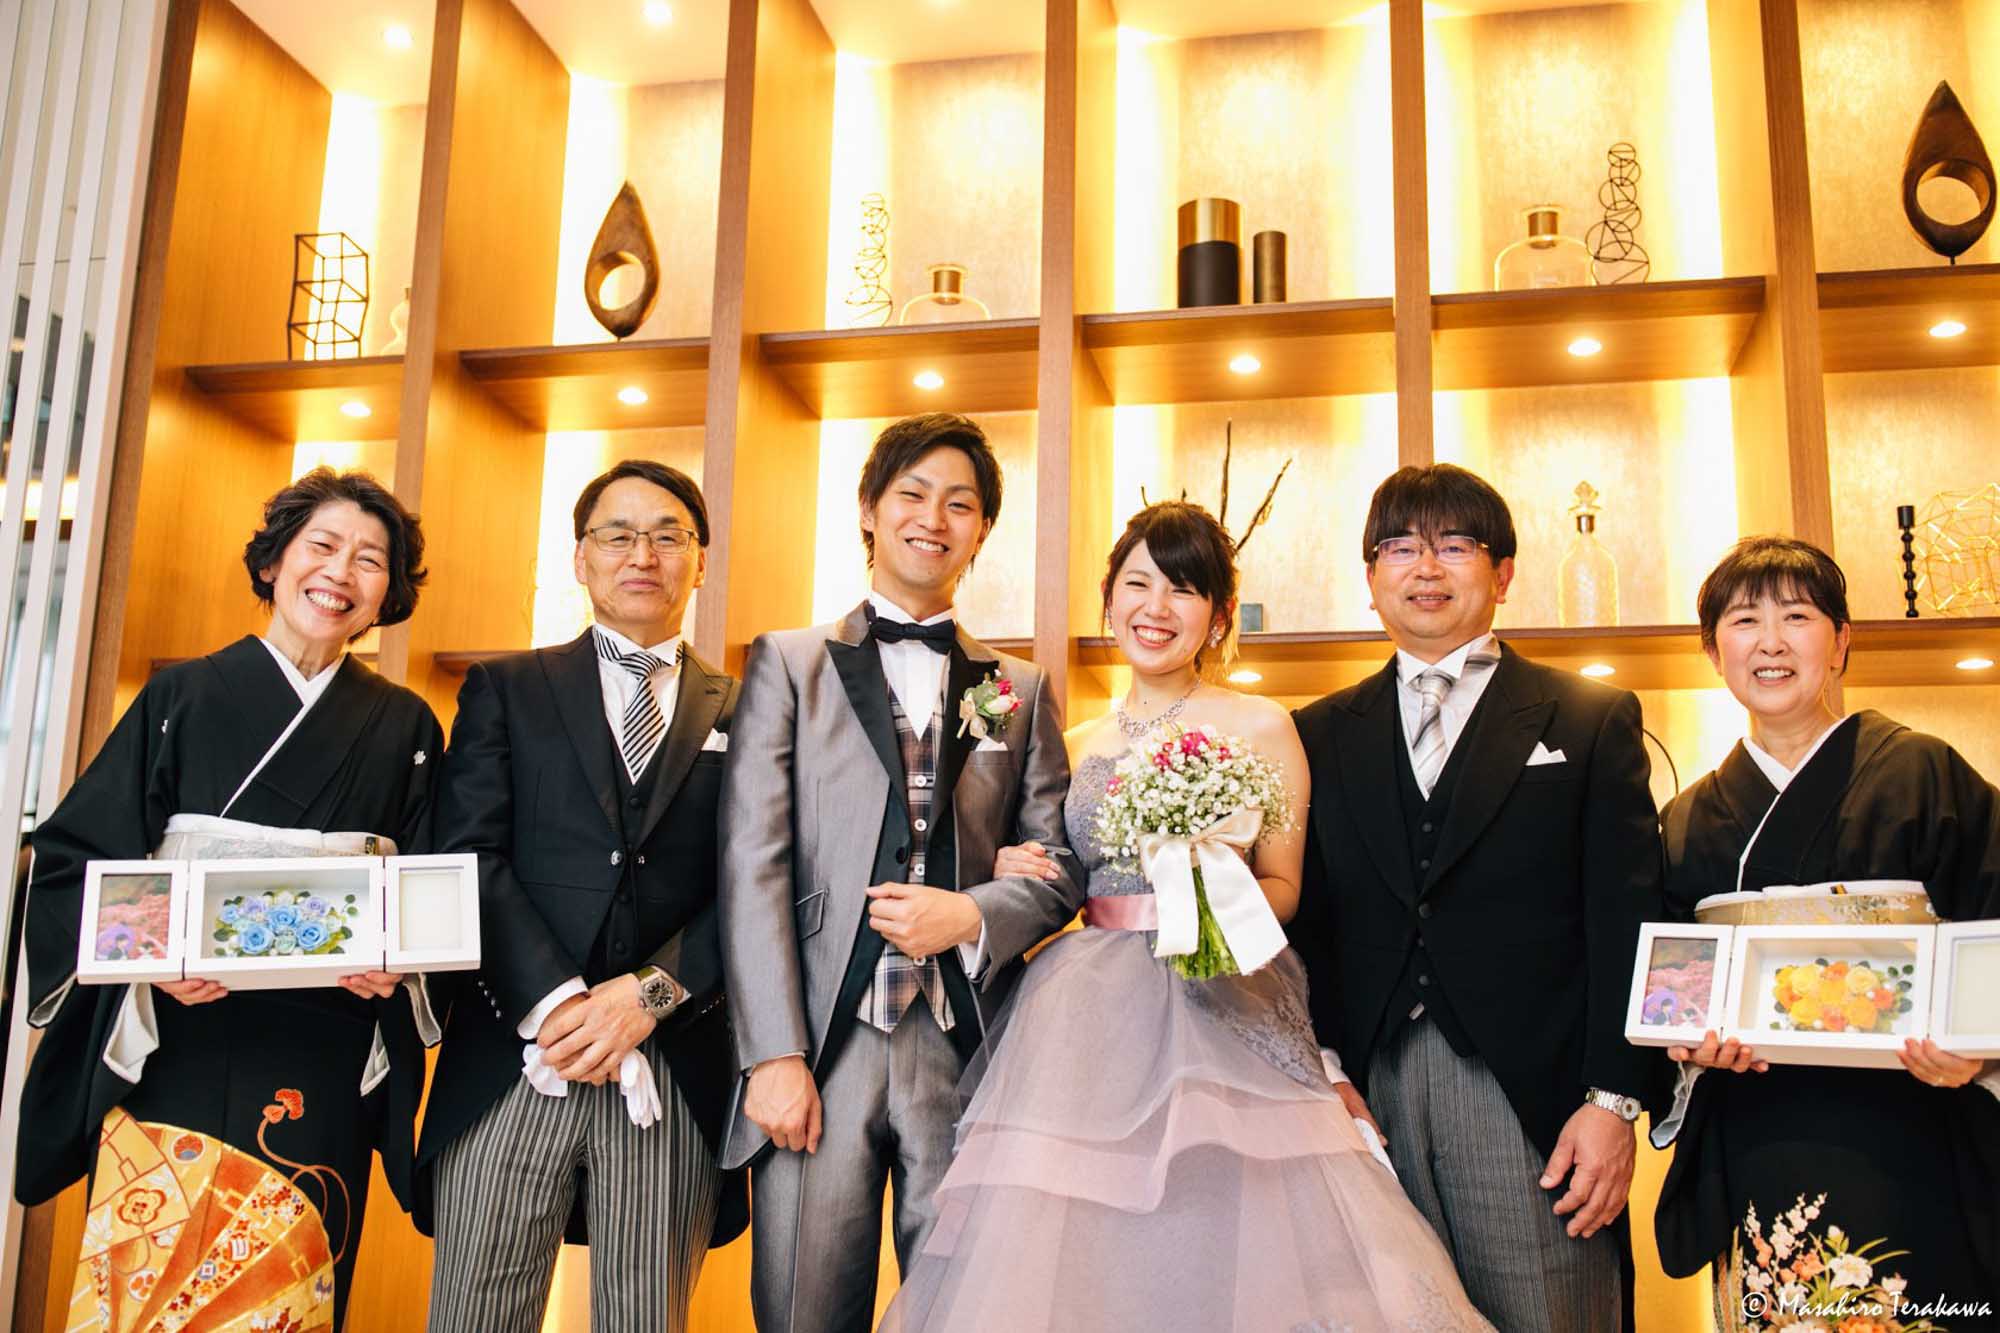 結婚式の写真をカメラマンが撮ってお届けする大切さ ウェディングカメラマン寺川昌宏